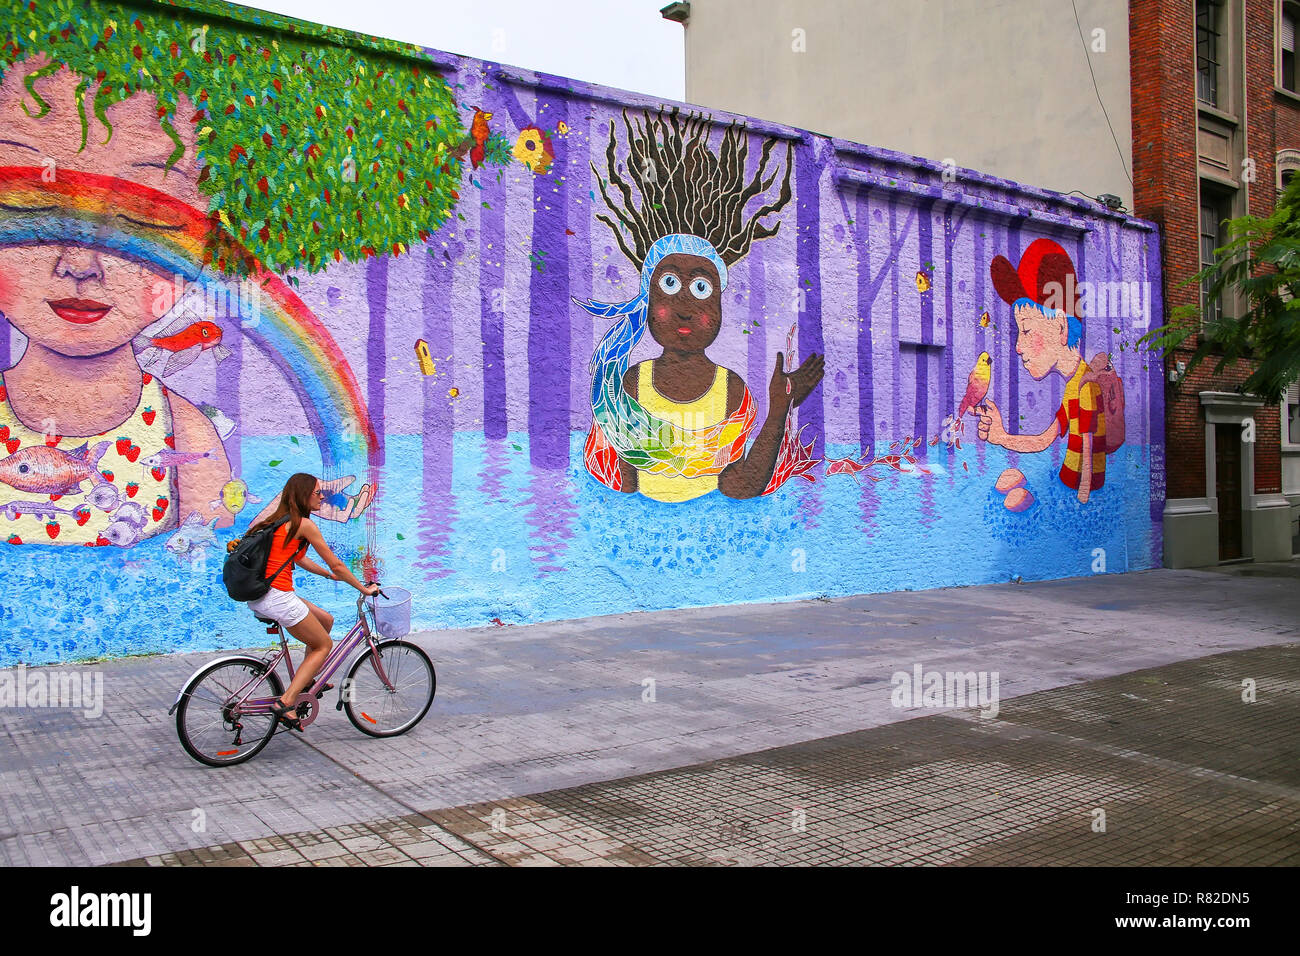 Jeune femme cycliste le long mur coloré à Montevideo, Uruguay. Montevideo est la capitale et la plus grande ville de l'Uruguay. Banque D'Images